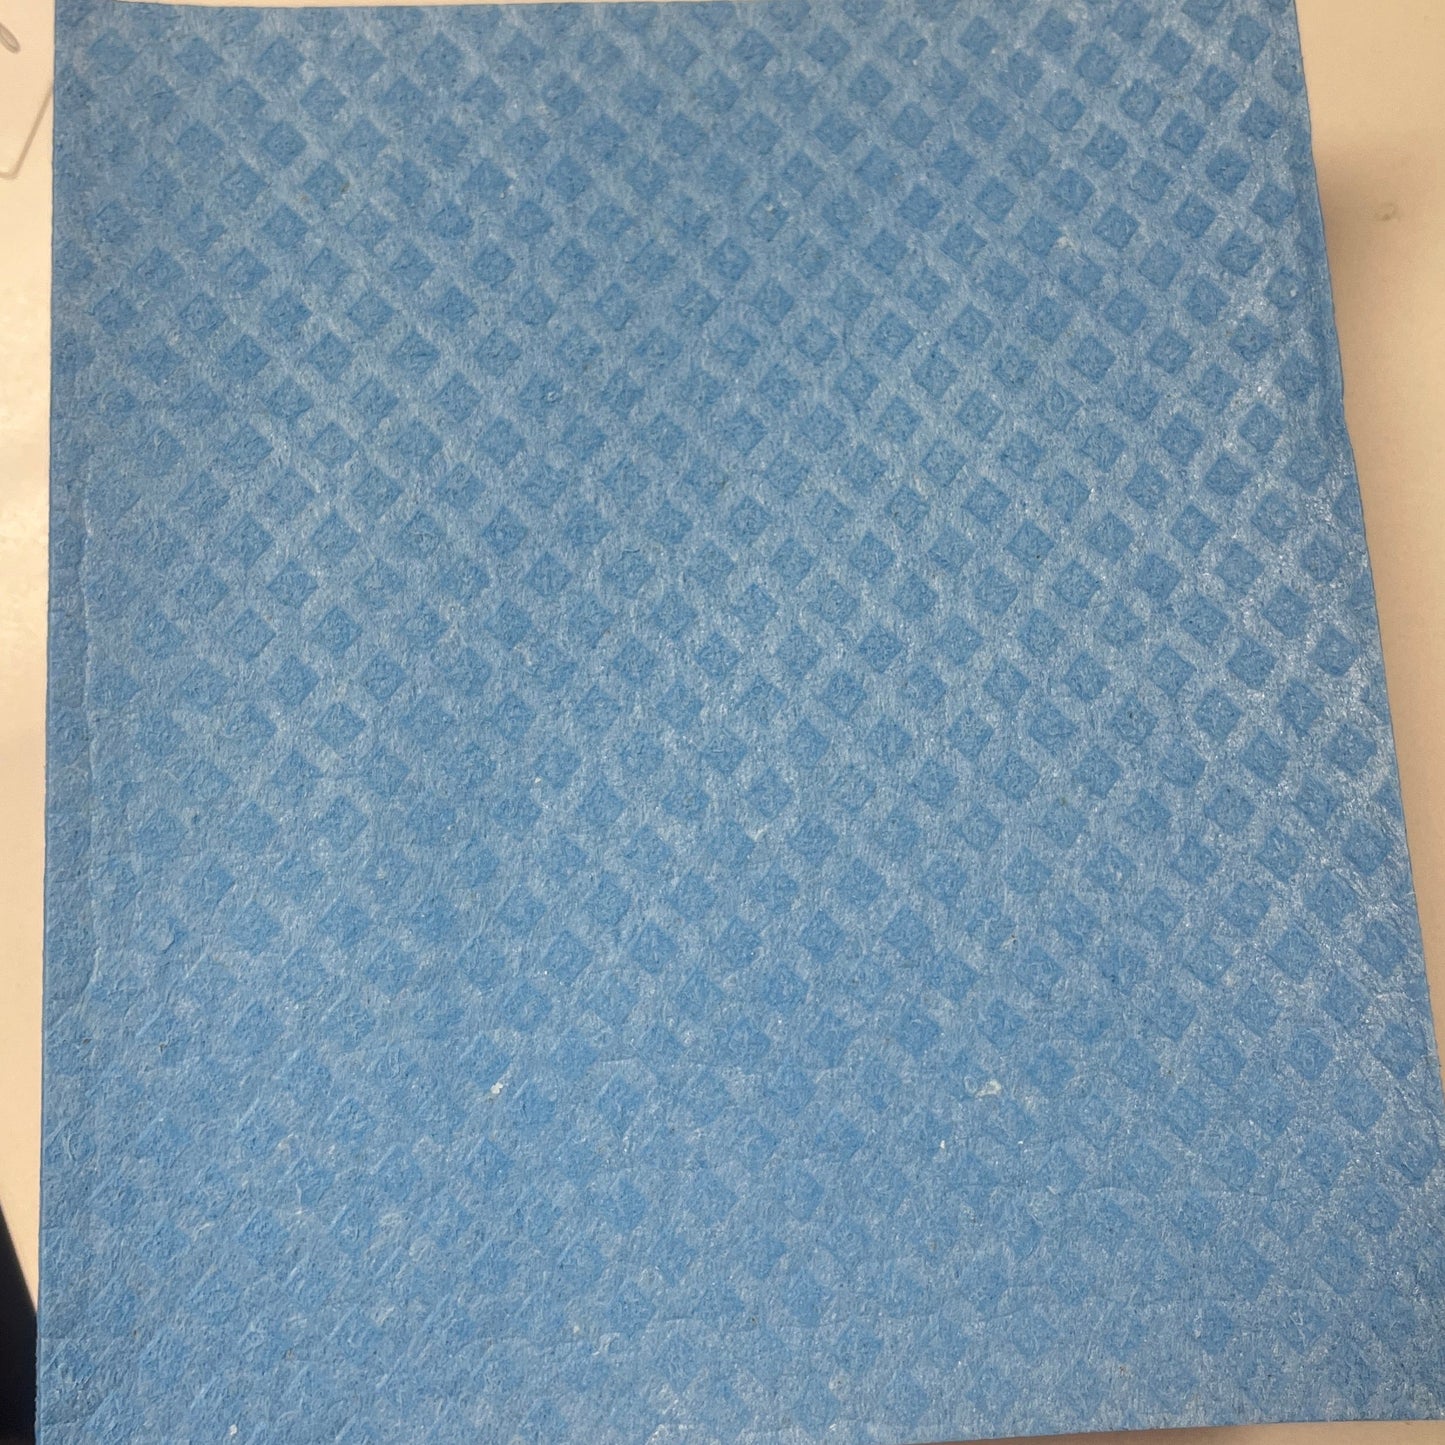 Swedish Cloth Swedish Sponge Cloth | Dishcloth Unpaper Towel Paper Baby Napkin | 100% Compostable | Zero Waste Kitchen